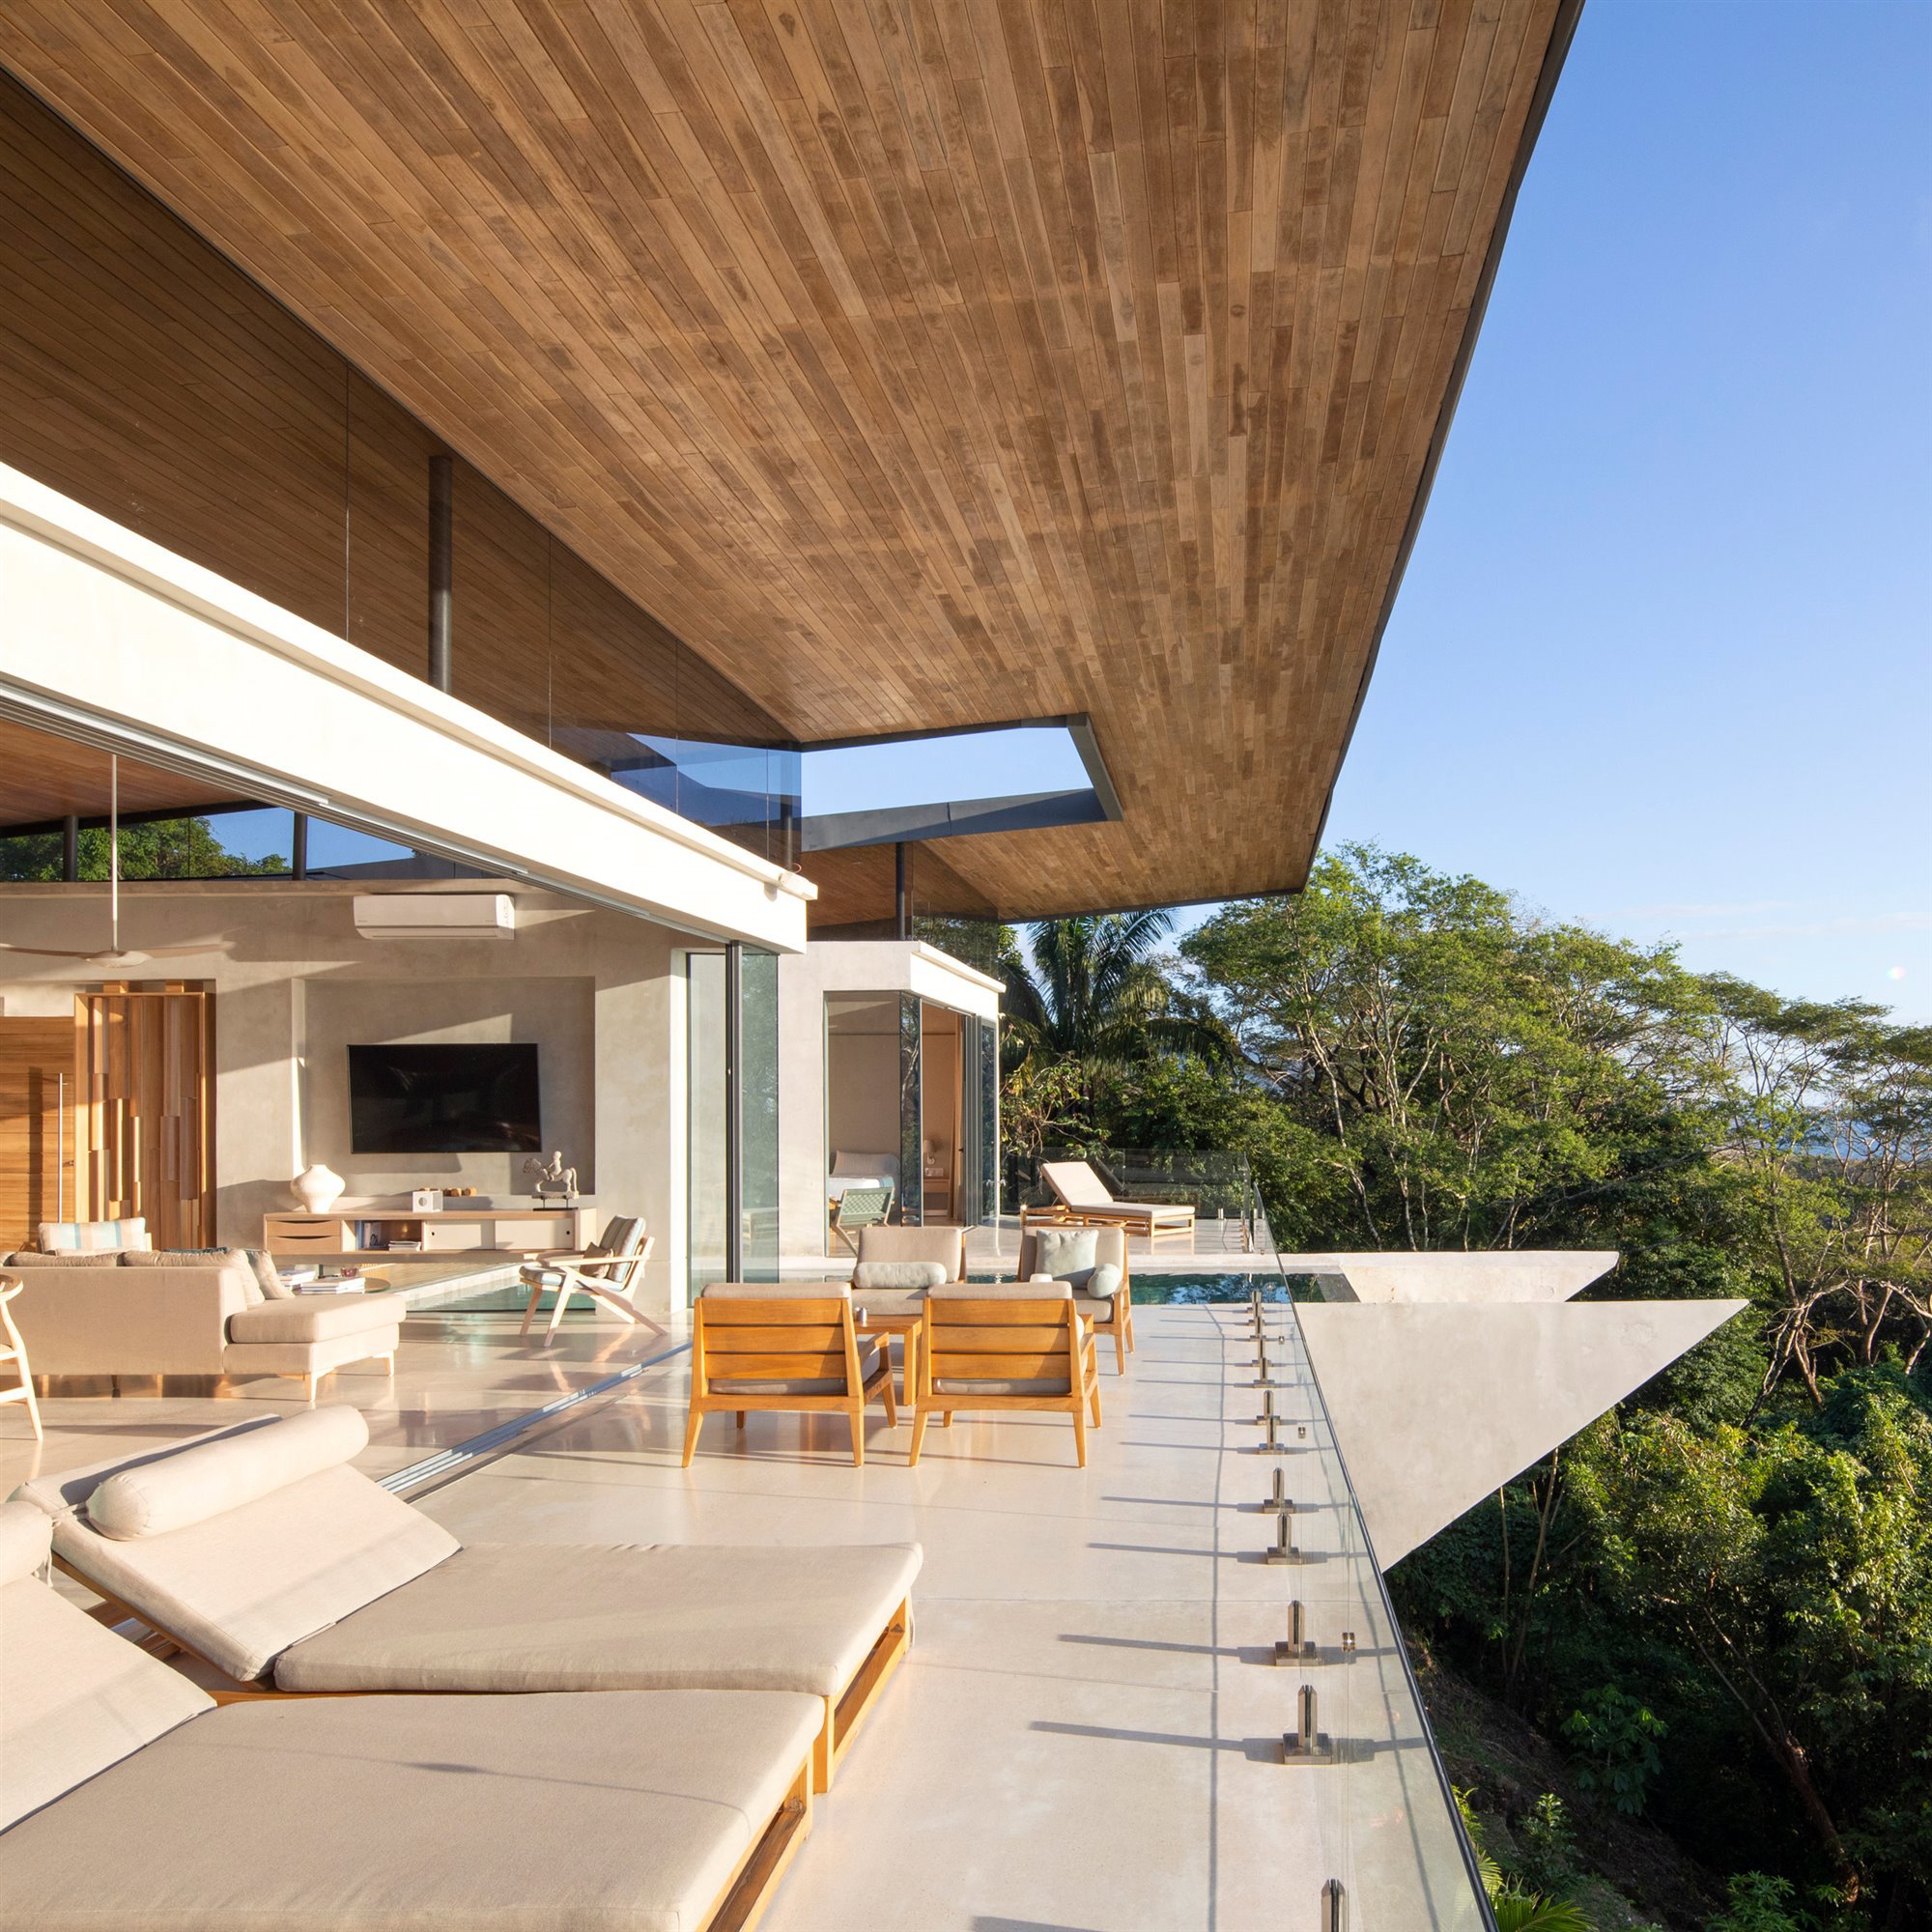 Casa moderna frente a la playa en Costa Rica fachada abierta a la naturaleza